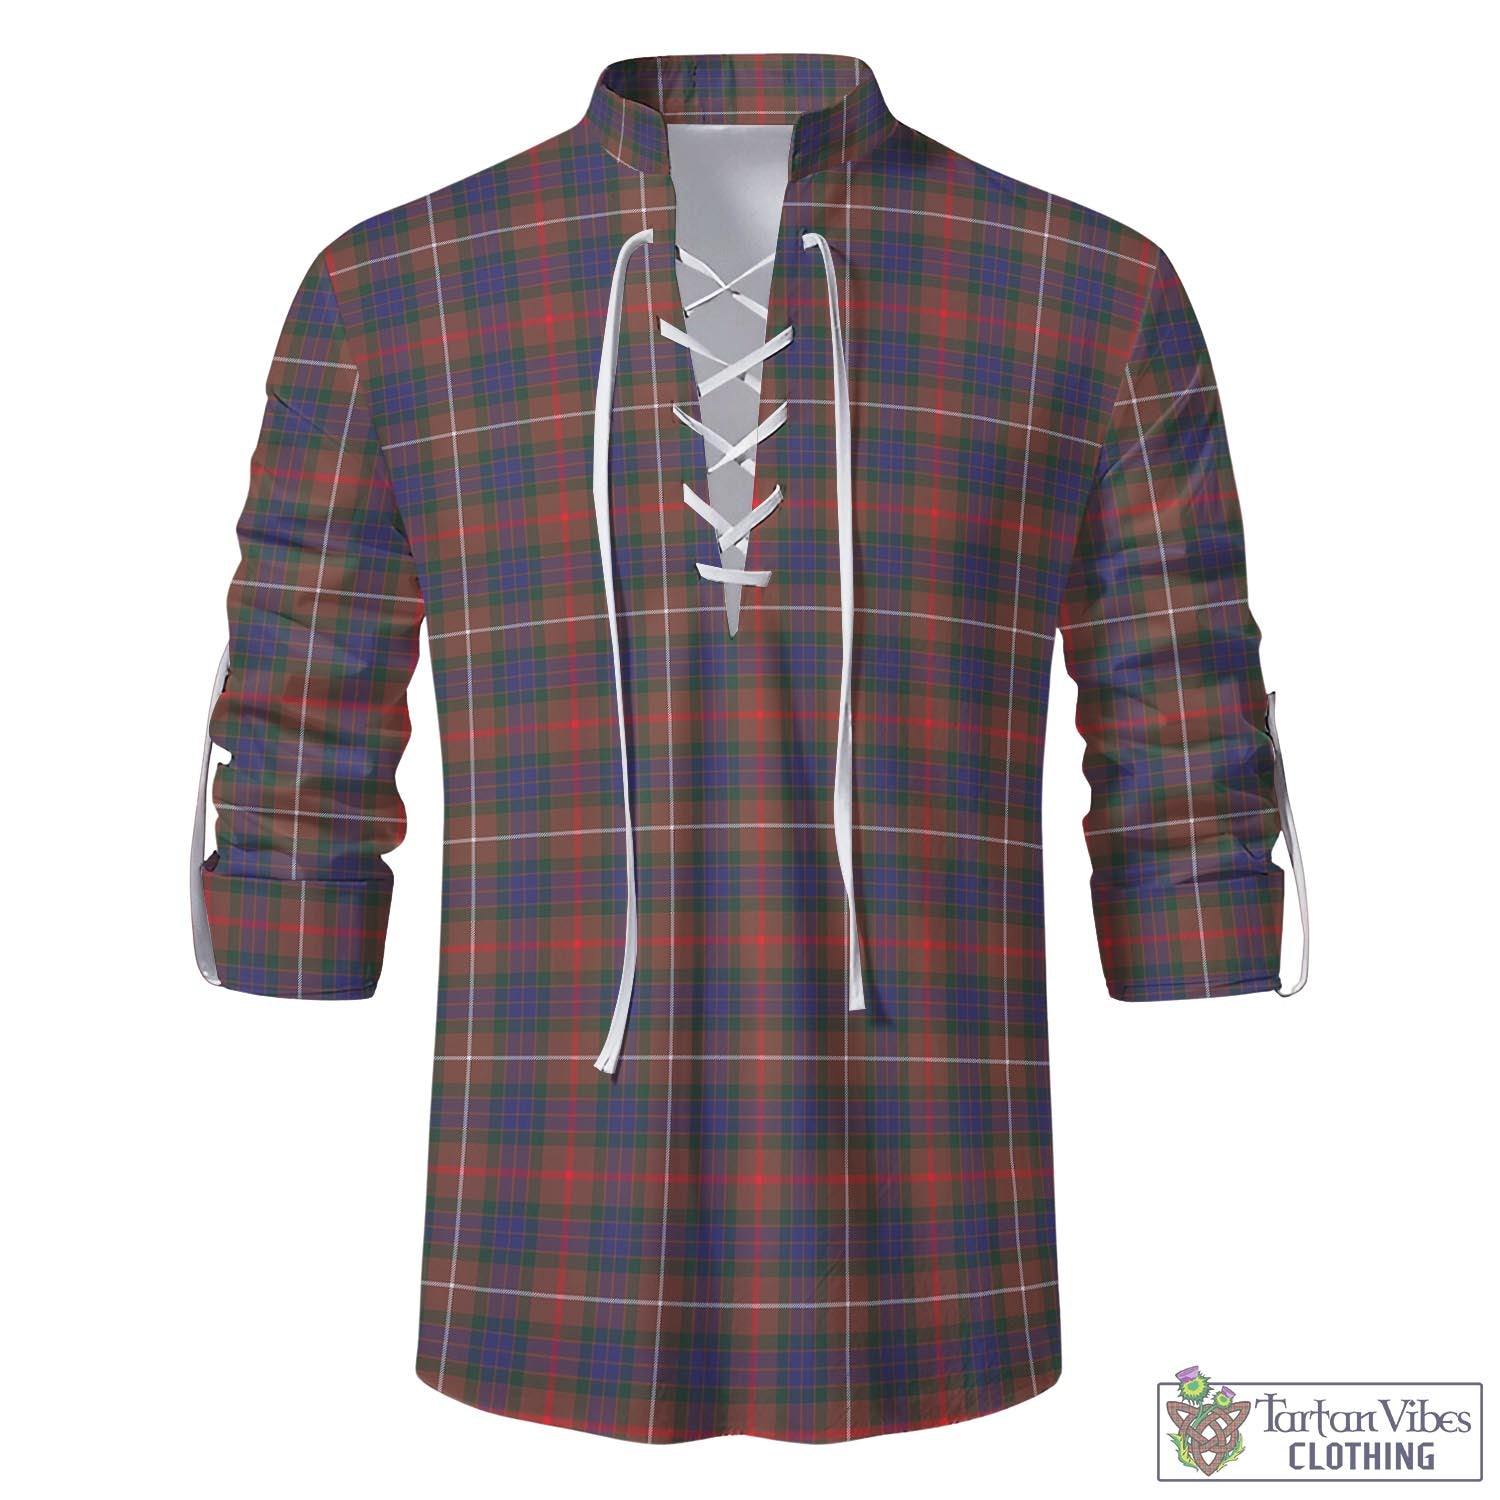 Tartan Vibes Clothing Fraser Hunting Modern Tartan Men's Scottish Traditional Jacobite Ghillie Kilt Shirt